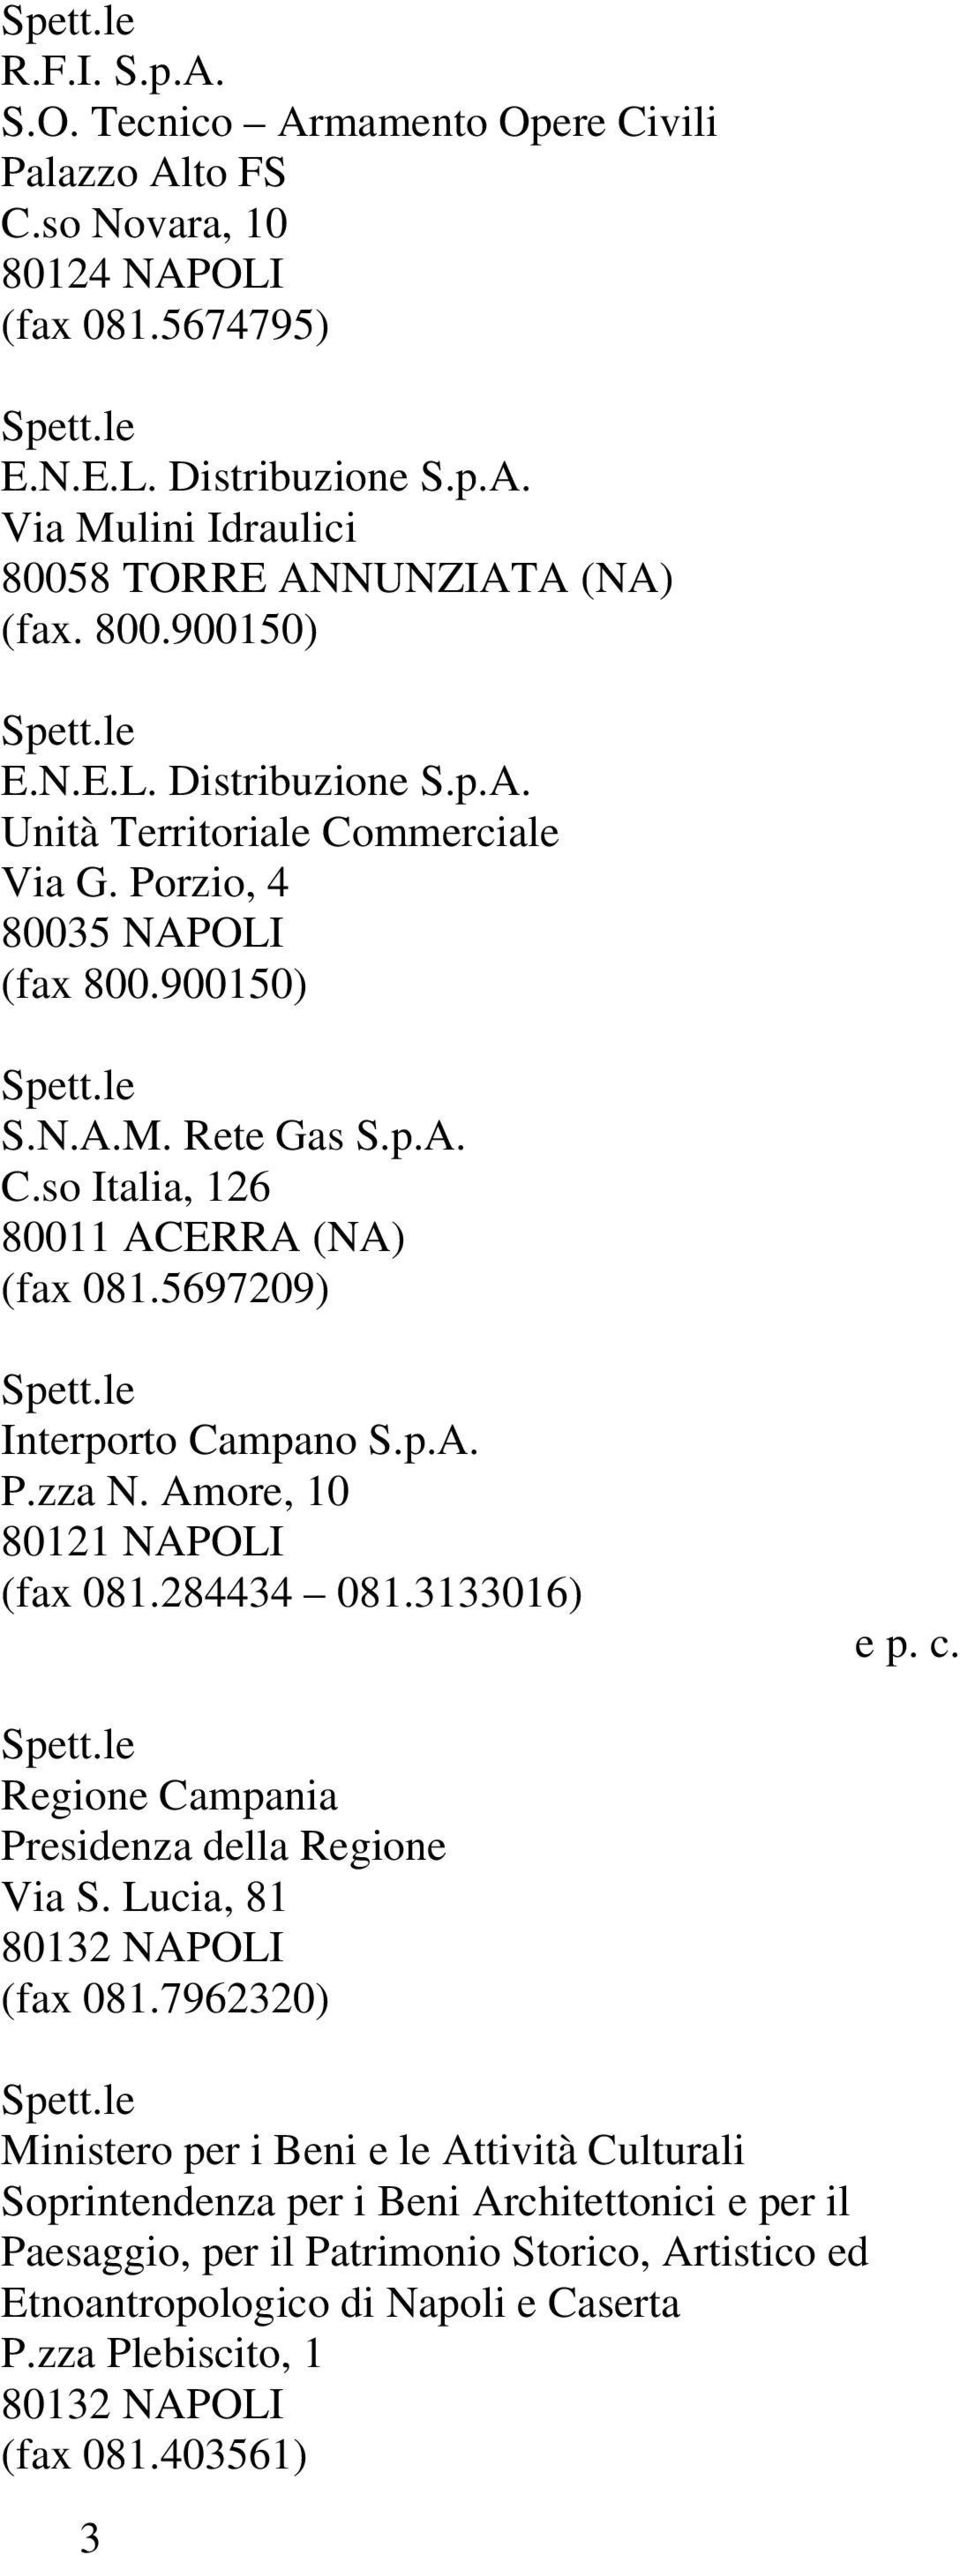 5697209) Interporto Campano S.p.A. P.zza N. Amore, 10 80121 NAPOLI (fax 081.284434 081.3133016) e p. c. Presidenza della Regione Via S. Lucia, 81 (fax 081.